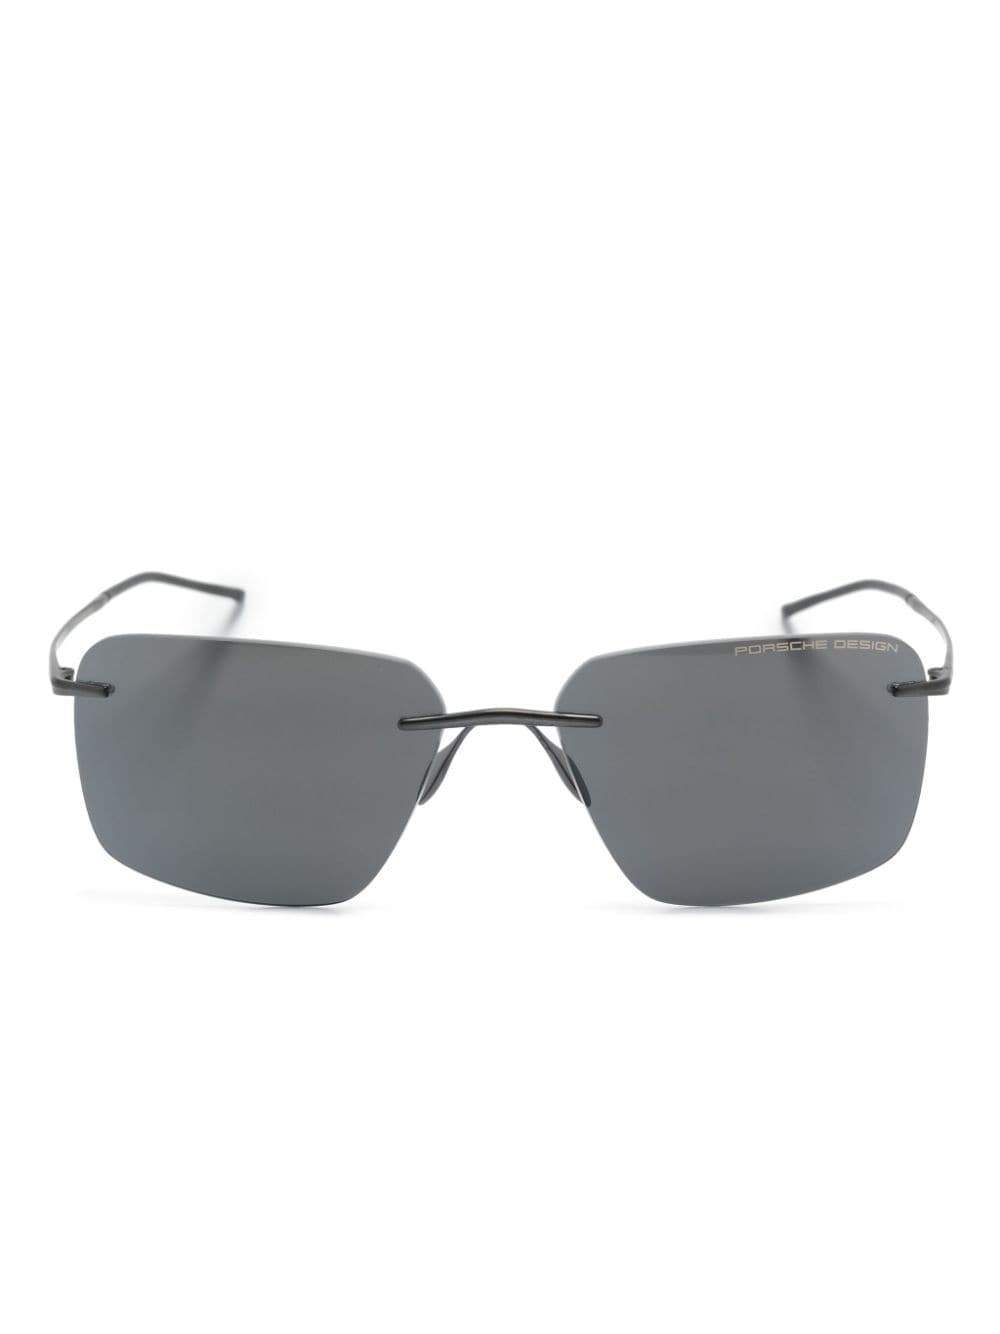 Porsche Design P8923 Square-frame Sunglasses In Black